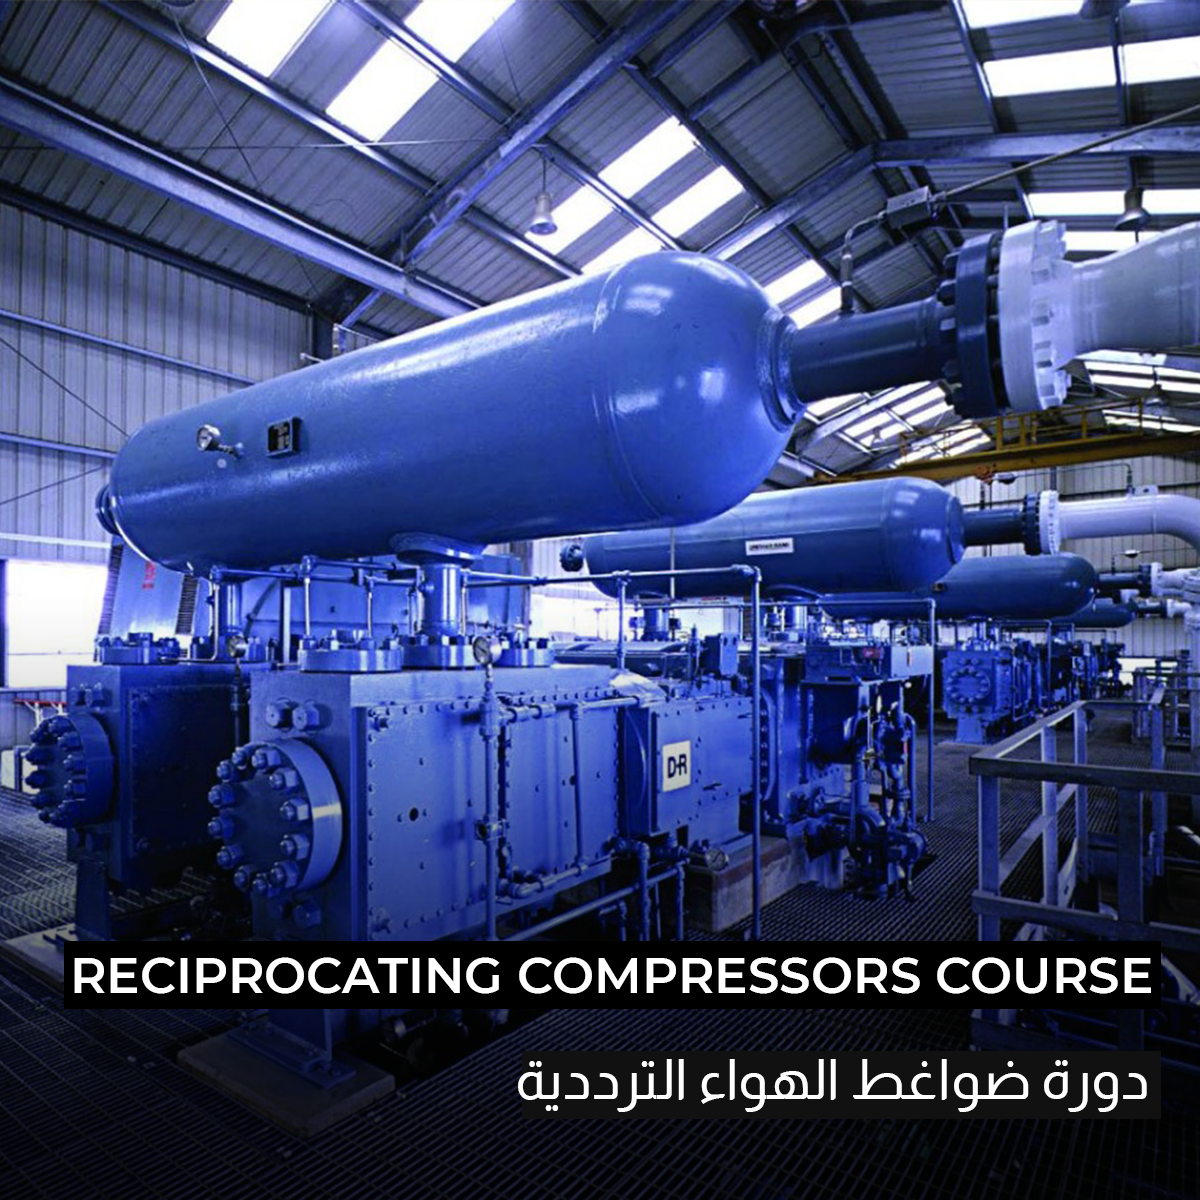 Reciprocating Compressors "Recorded"